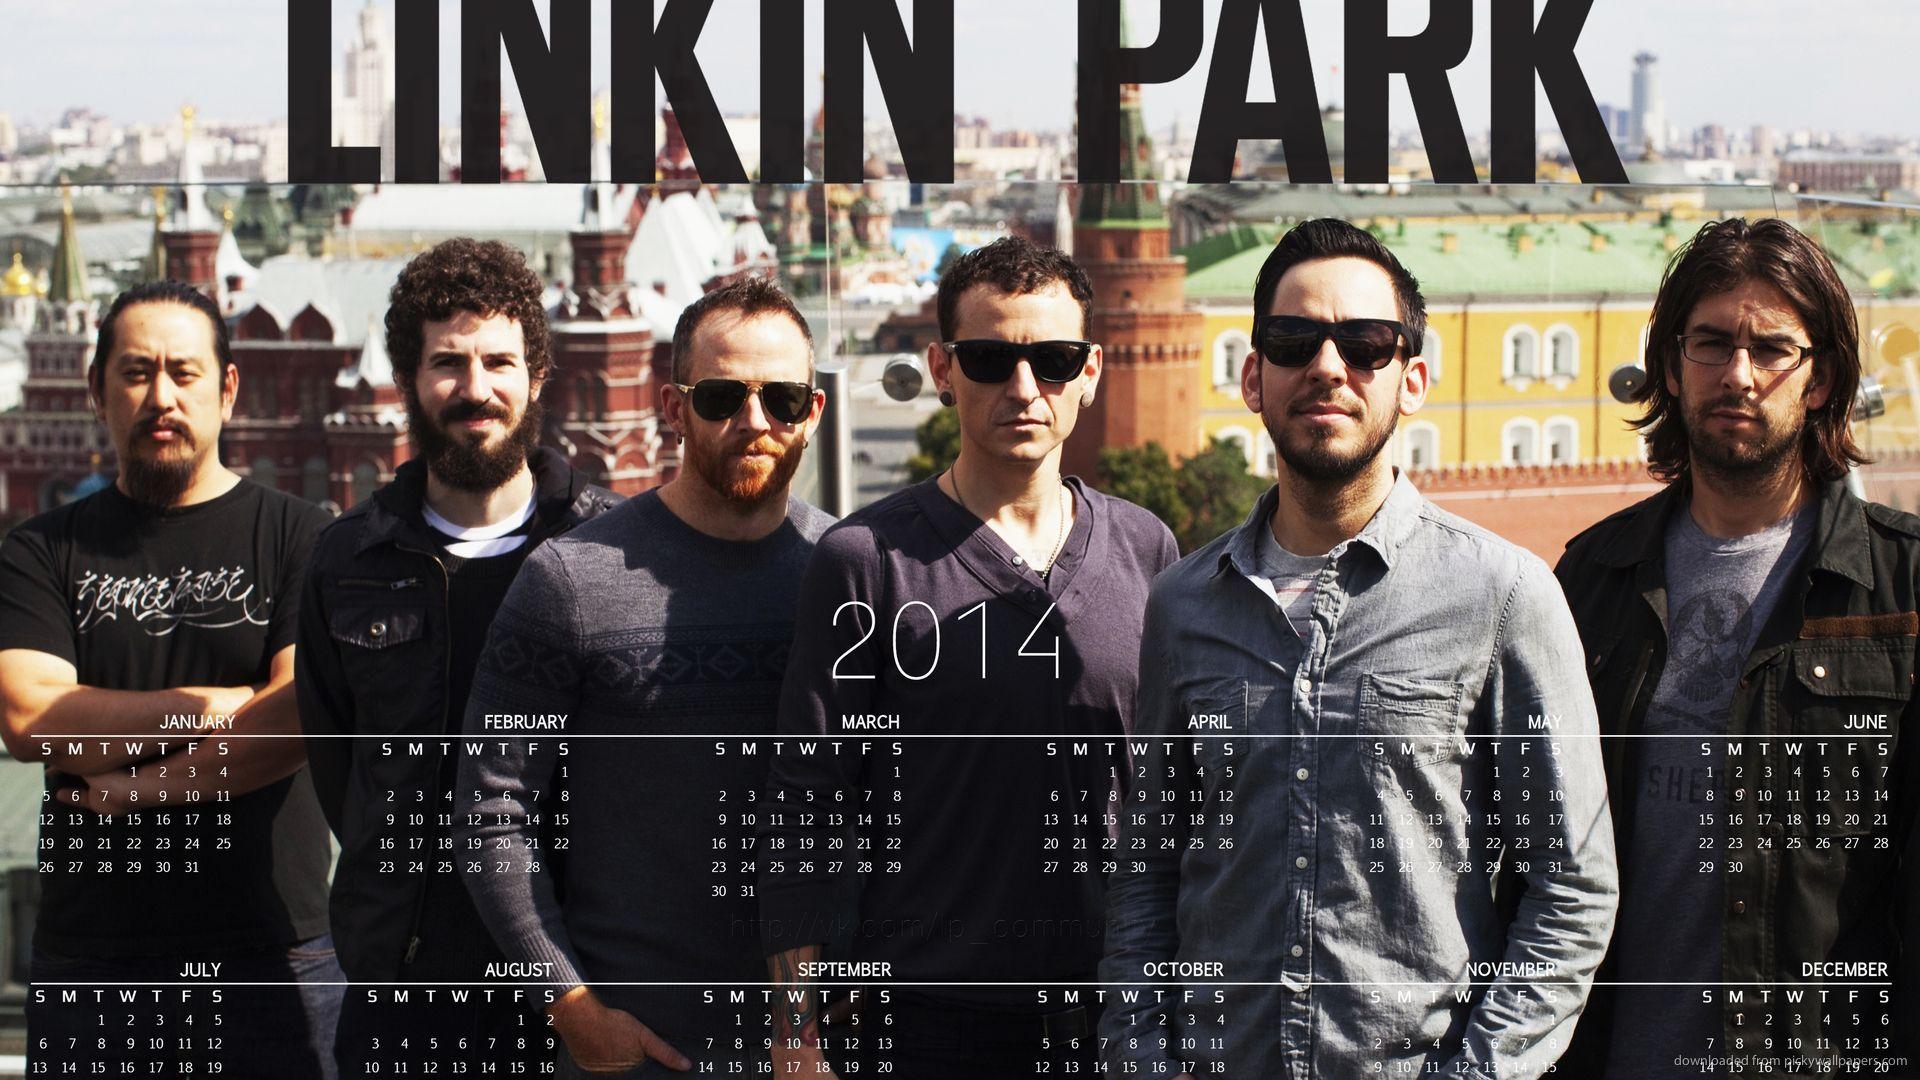 Download 1920x1080 Linkin Park 2014 Calendar Wallpaper